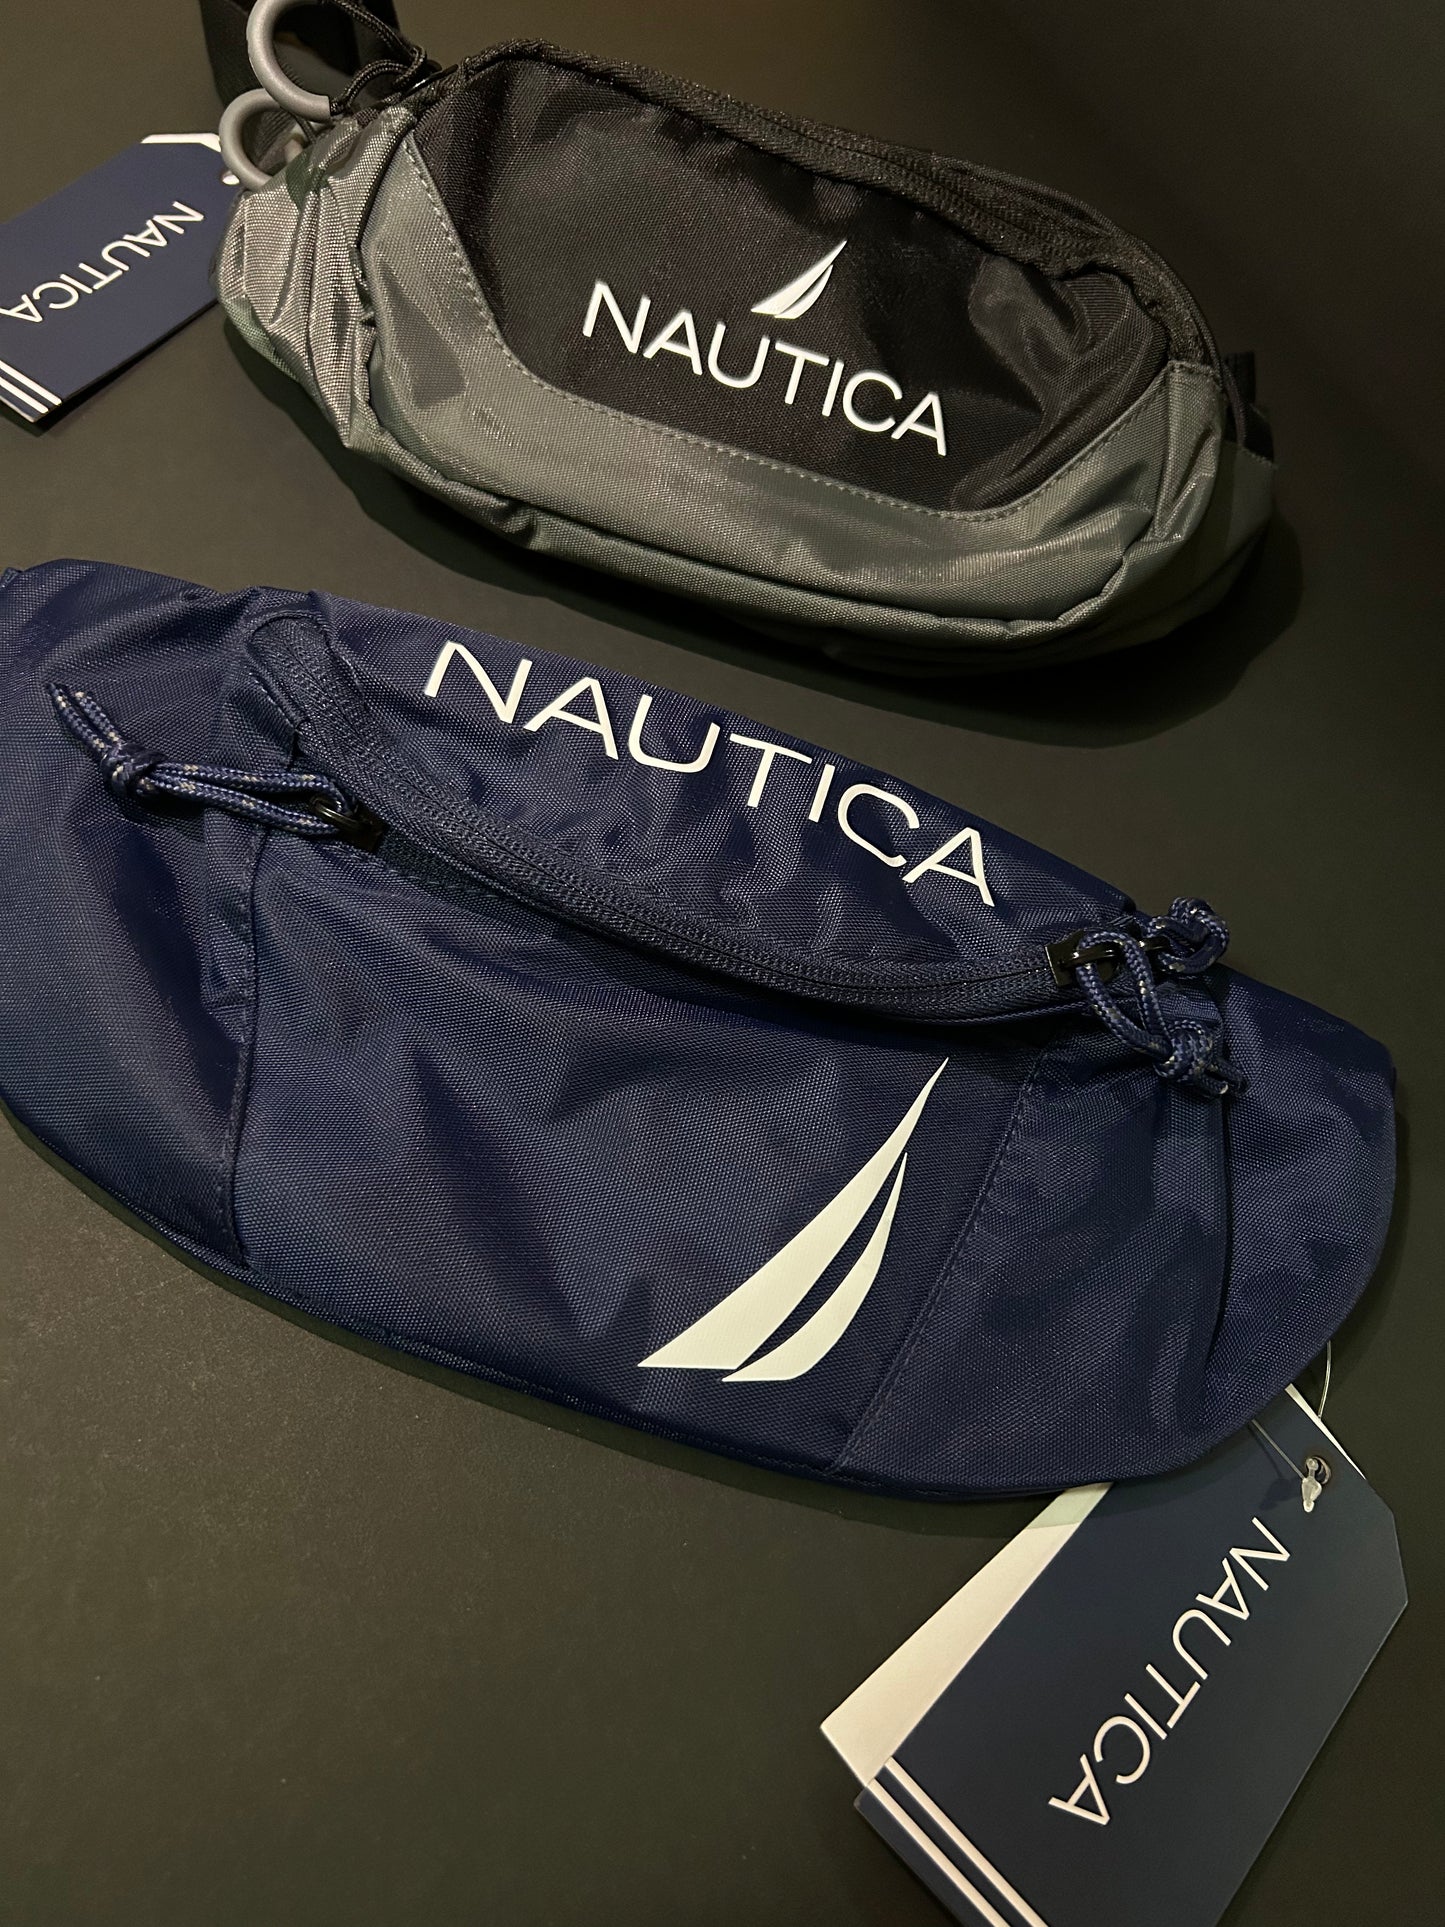 Nautica Bags